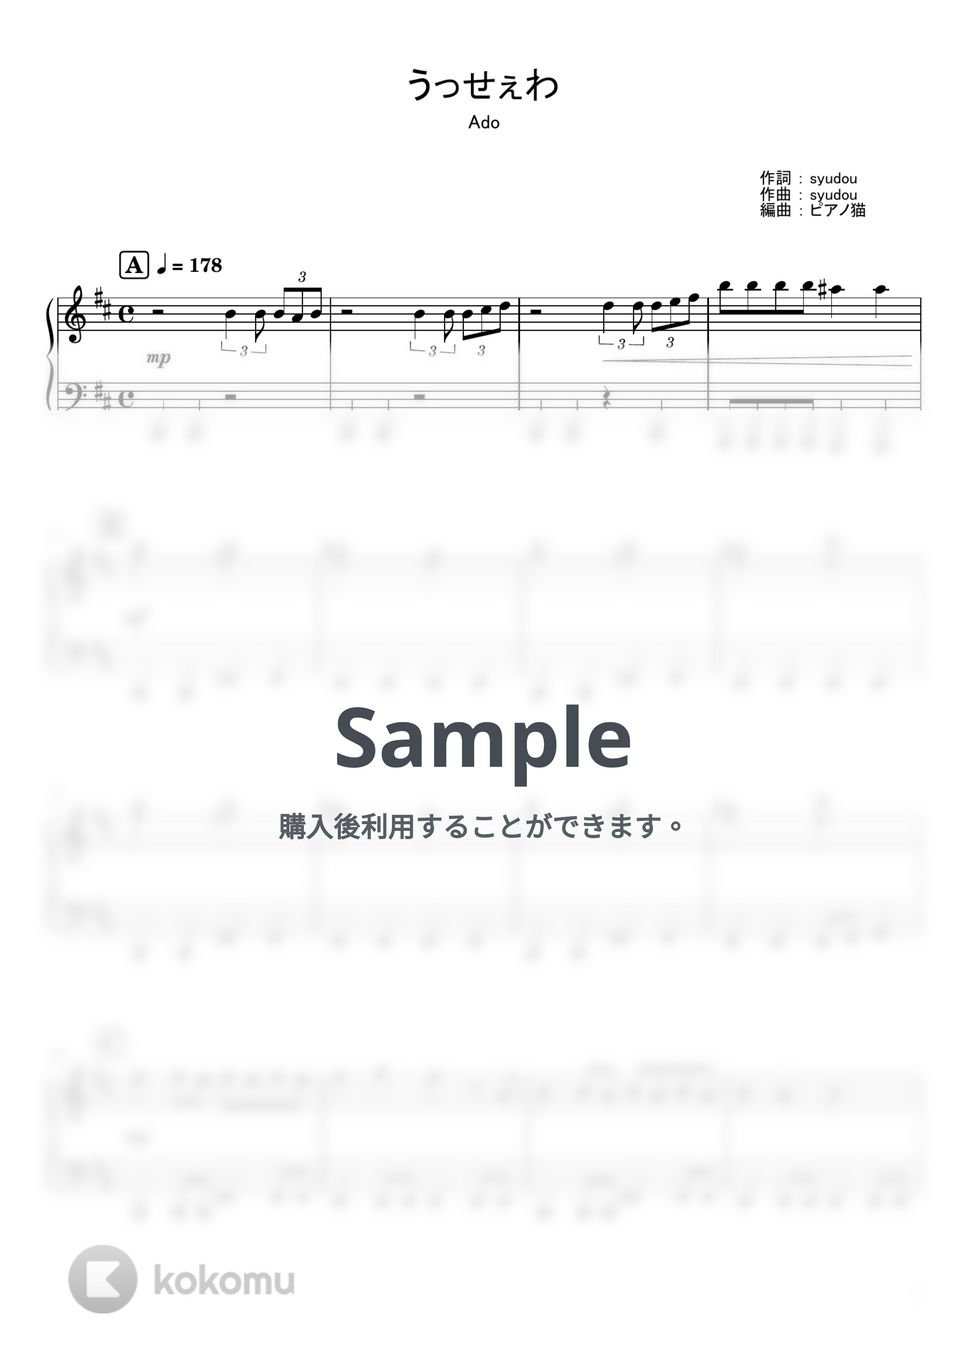 Ado - うっせぇわ (ピアノ,ソロ,弾き語り,Ado,うっせぇわ) by ピアノ猫